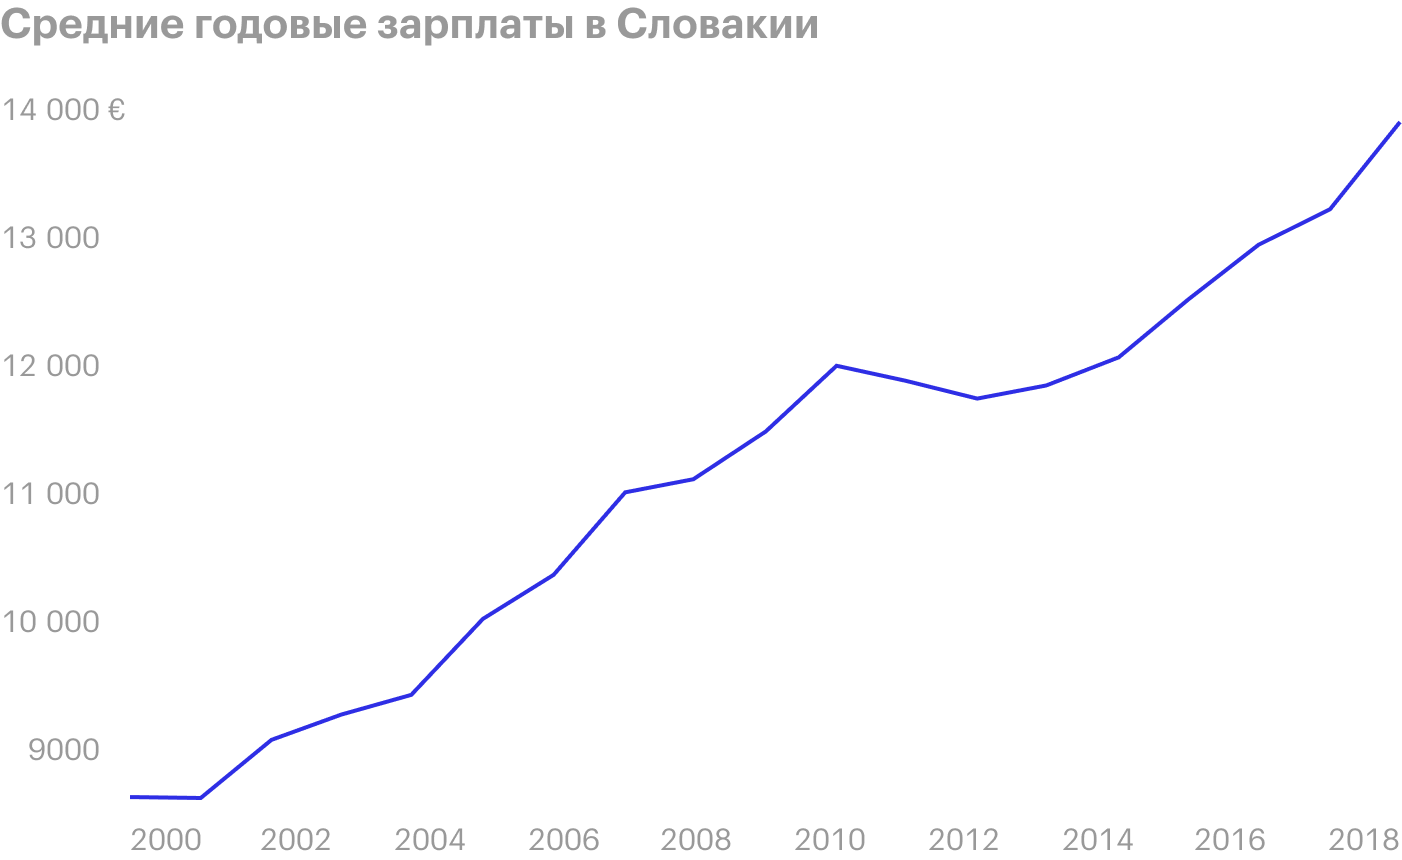 Средние годовые зарплаты в Словакии с 2000 по 2018 год в евро. Источник: «Статиста»